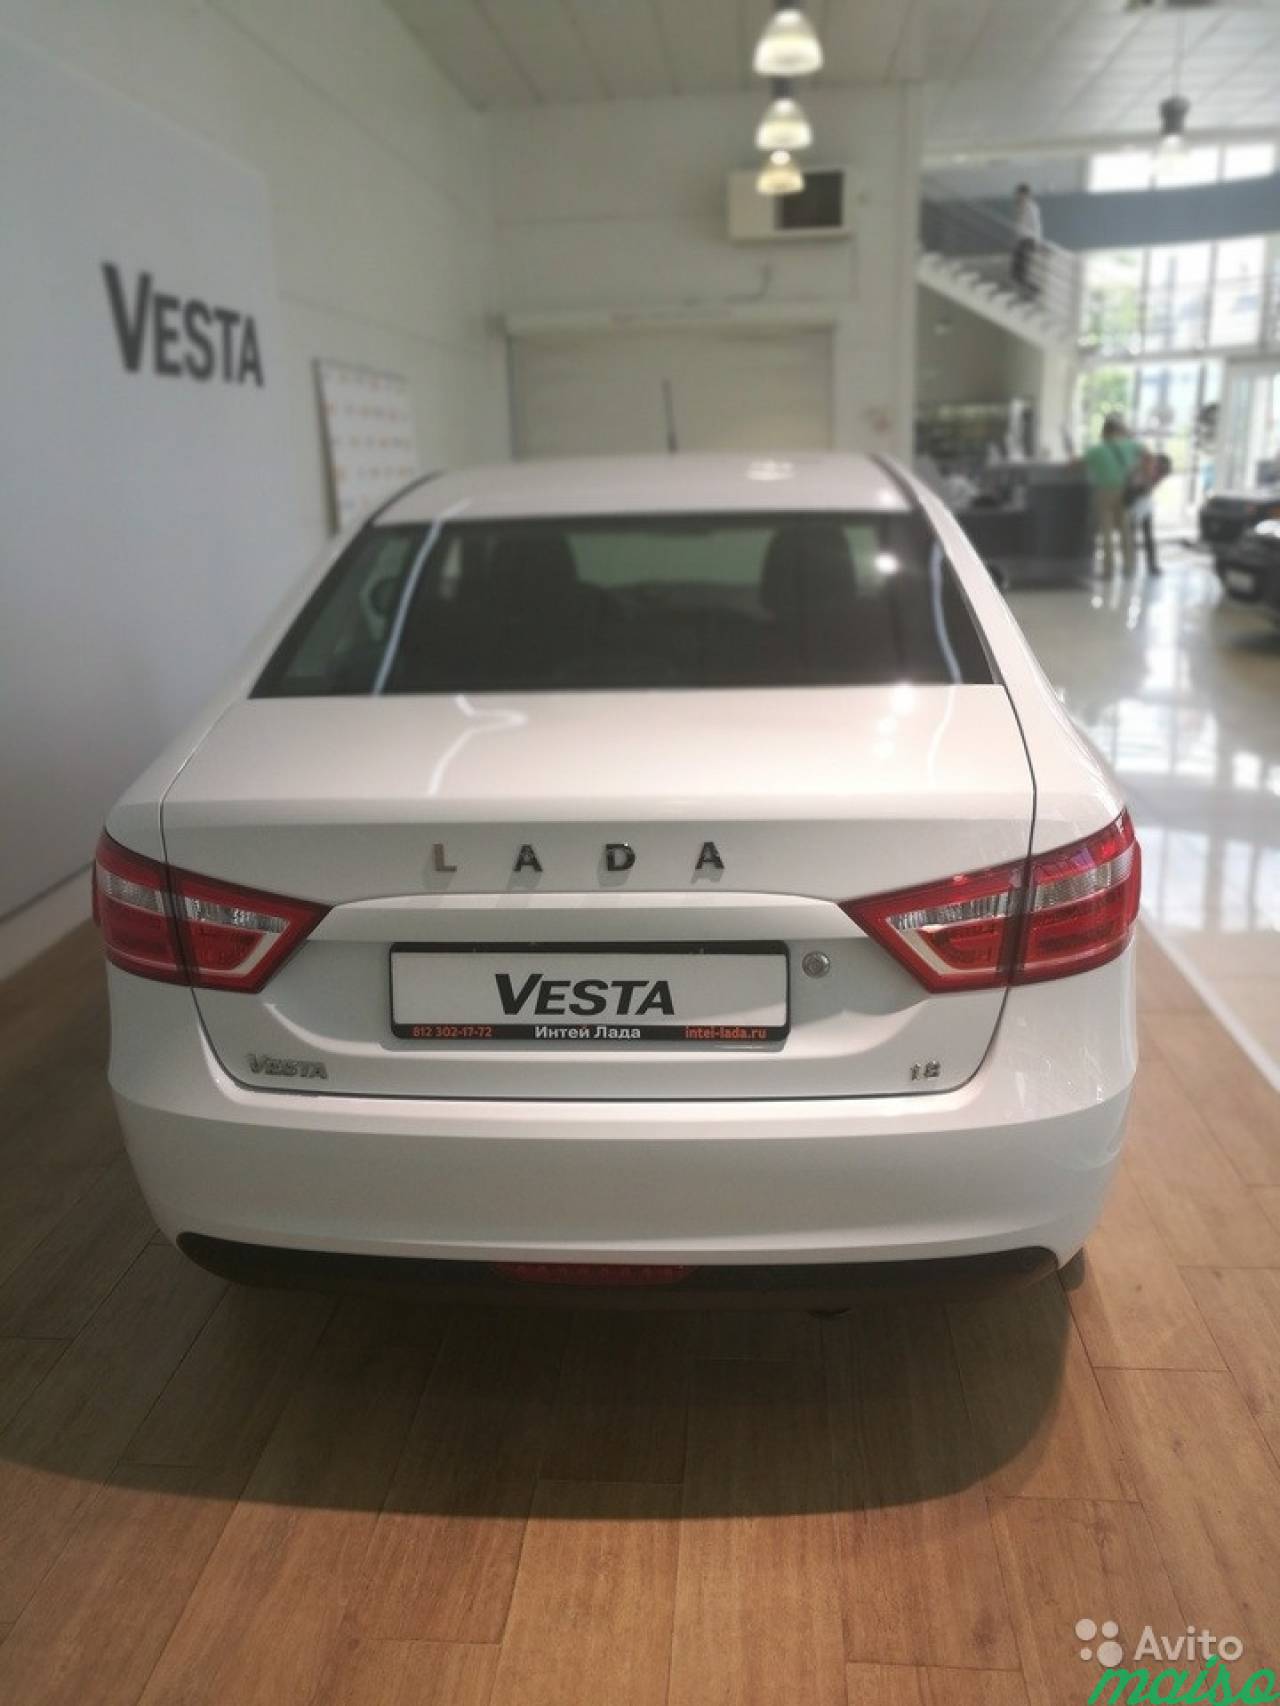 LADA Vesta 1.6 AMT, 2018, седан в Санкт-Петербурге. Фото 2